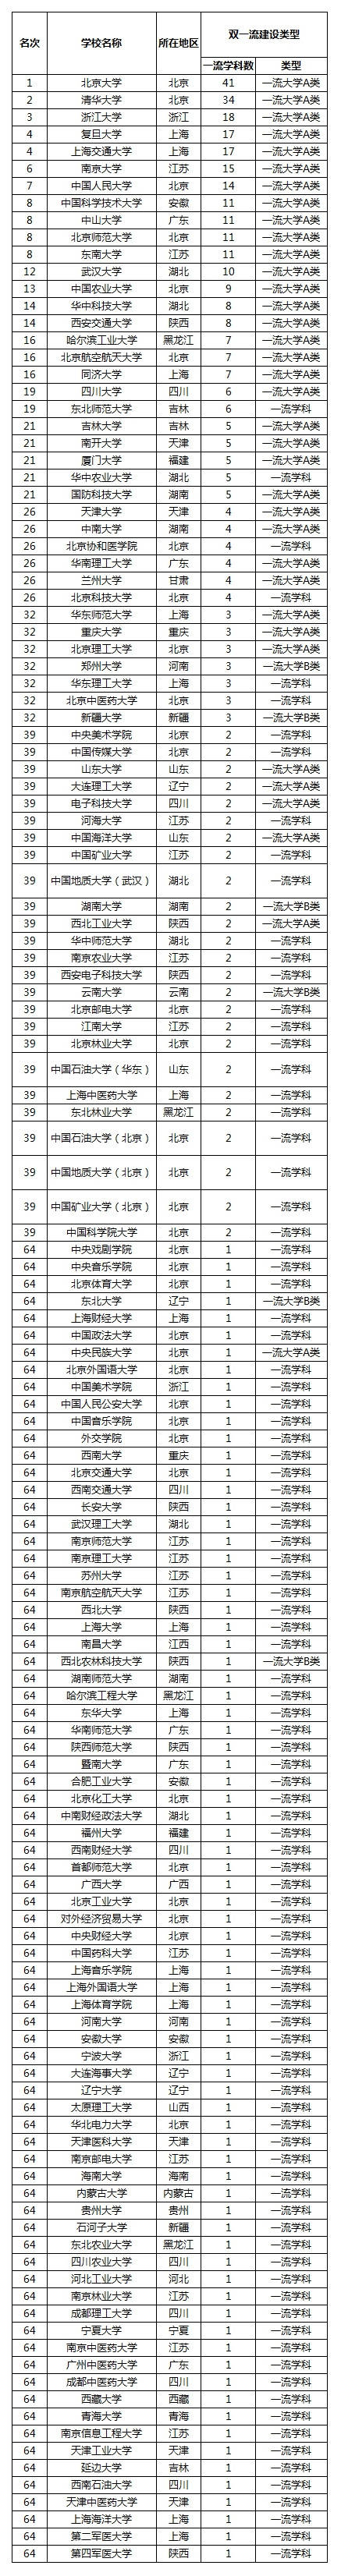 高校学科排行_2021山东高校排名:43所大学上榜,青岛大学居第4,进入全国百强